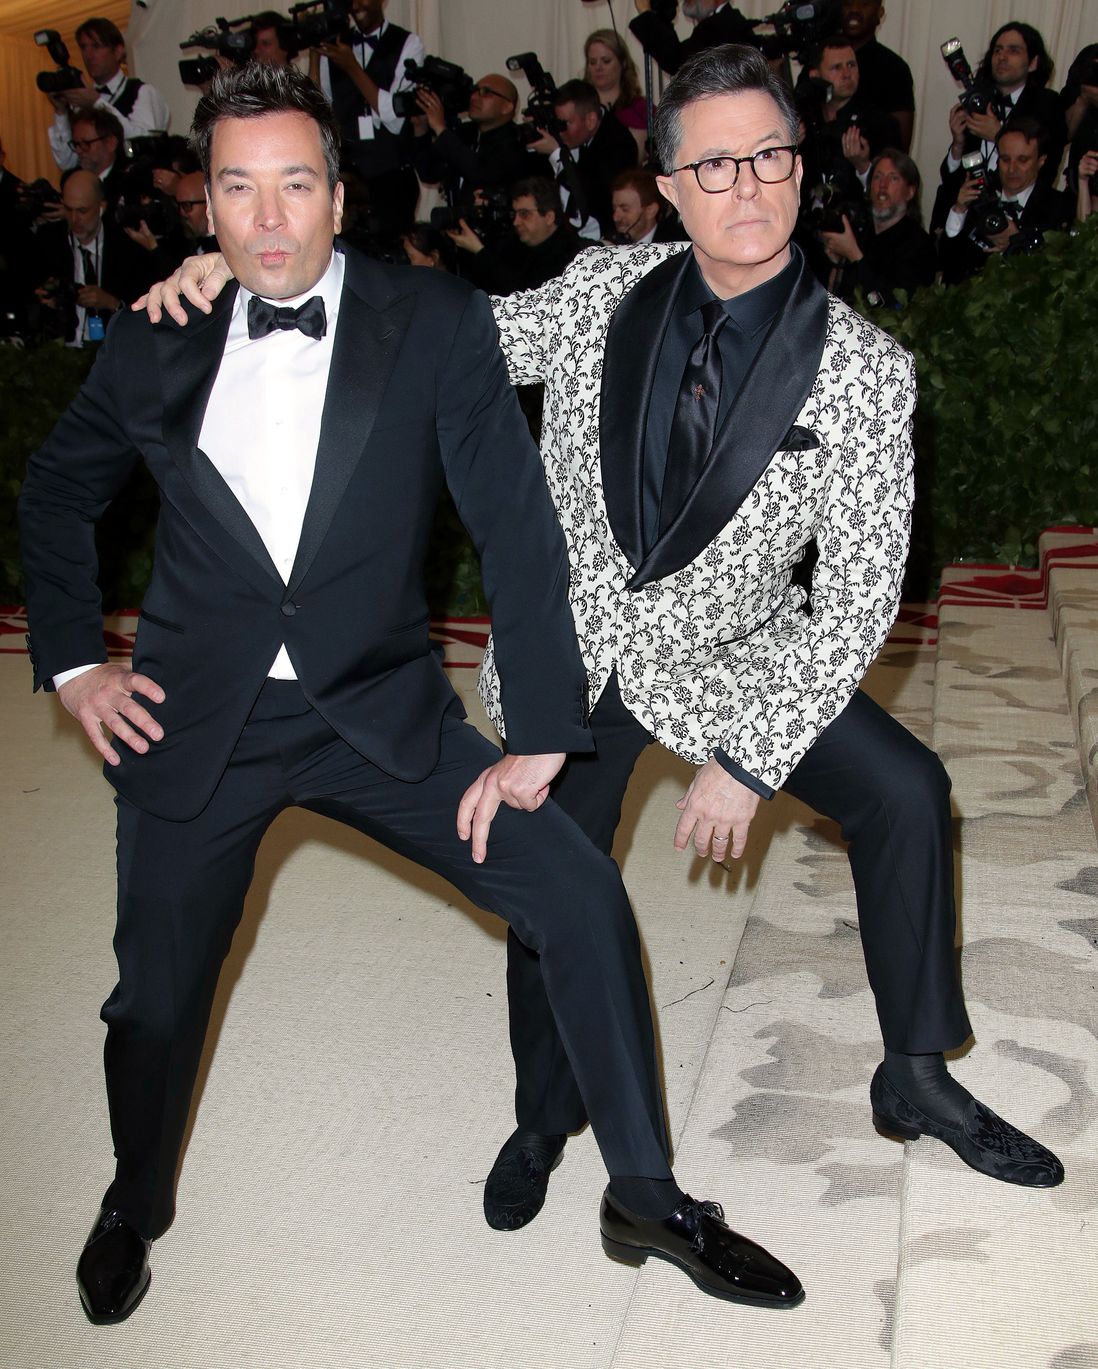 Jimmy Fallon and Stephen Colbert (REX/Shutterstock)